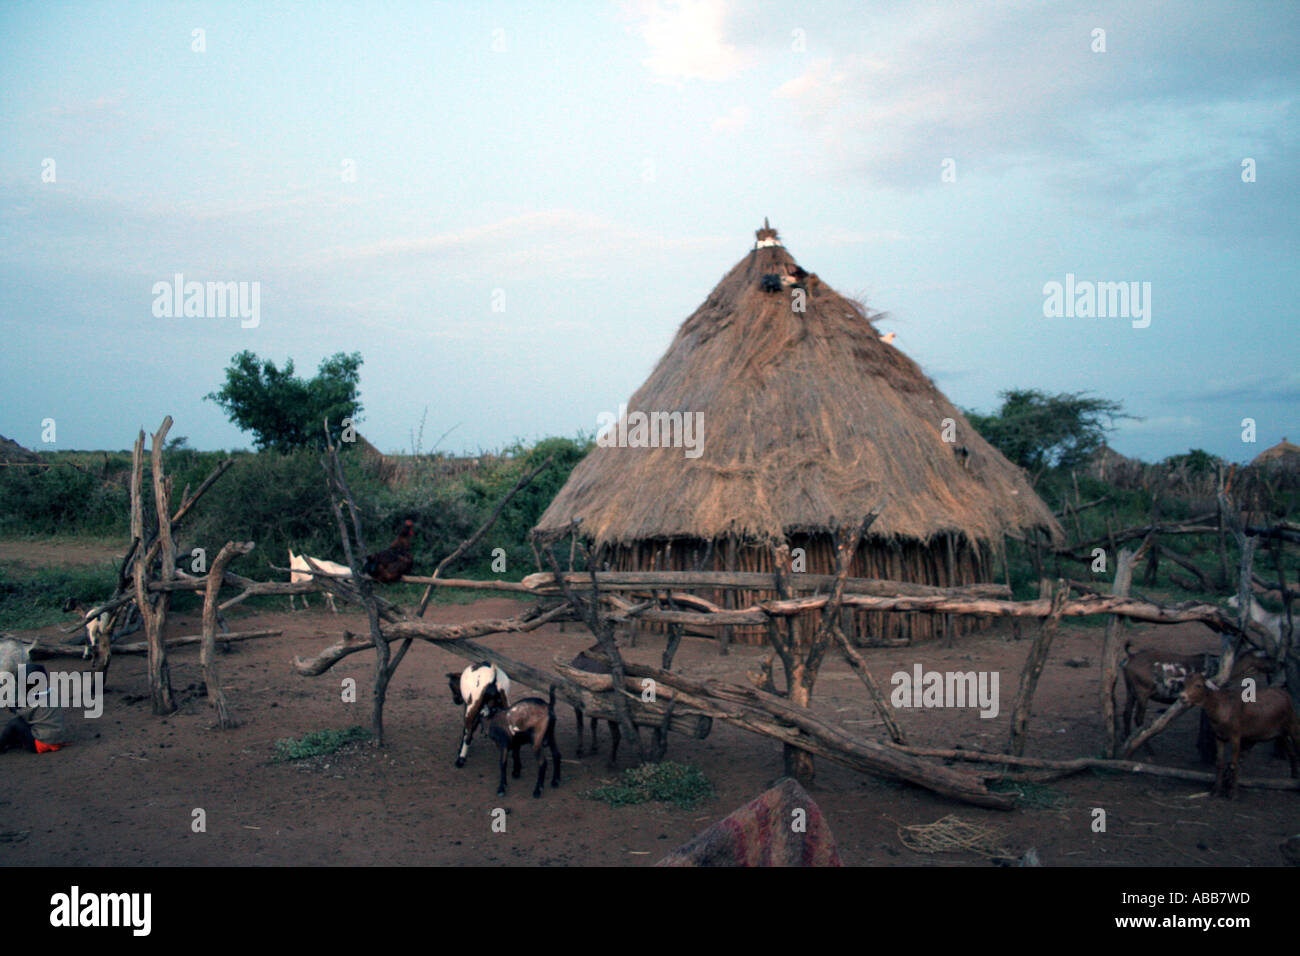 Village de la tribu Hamer et hut, vallée de l'Omo, Ethiopie Banque D'Images